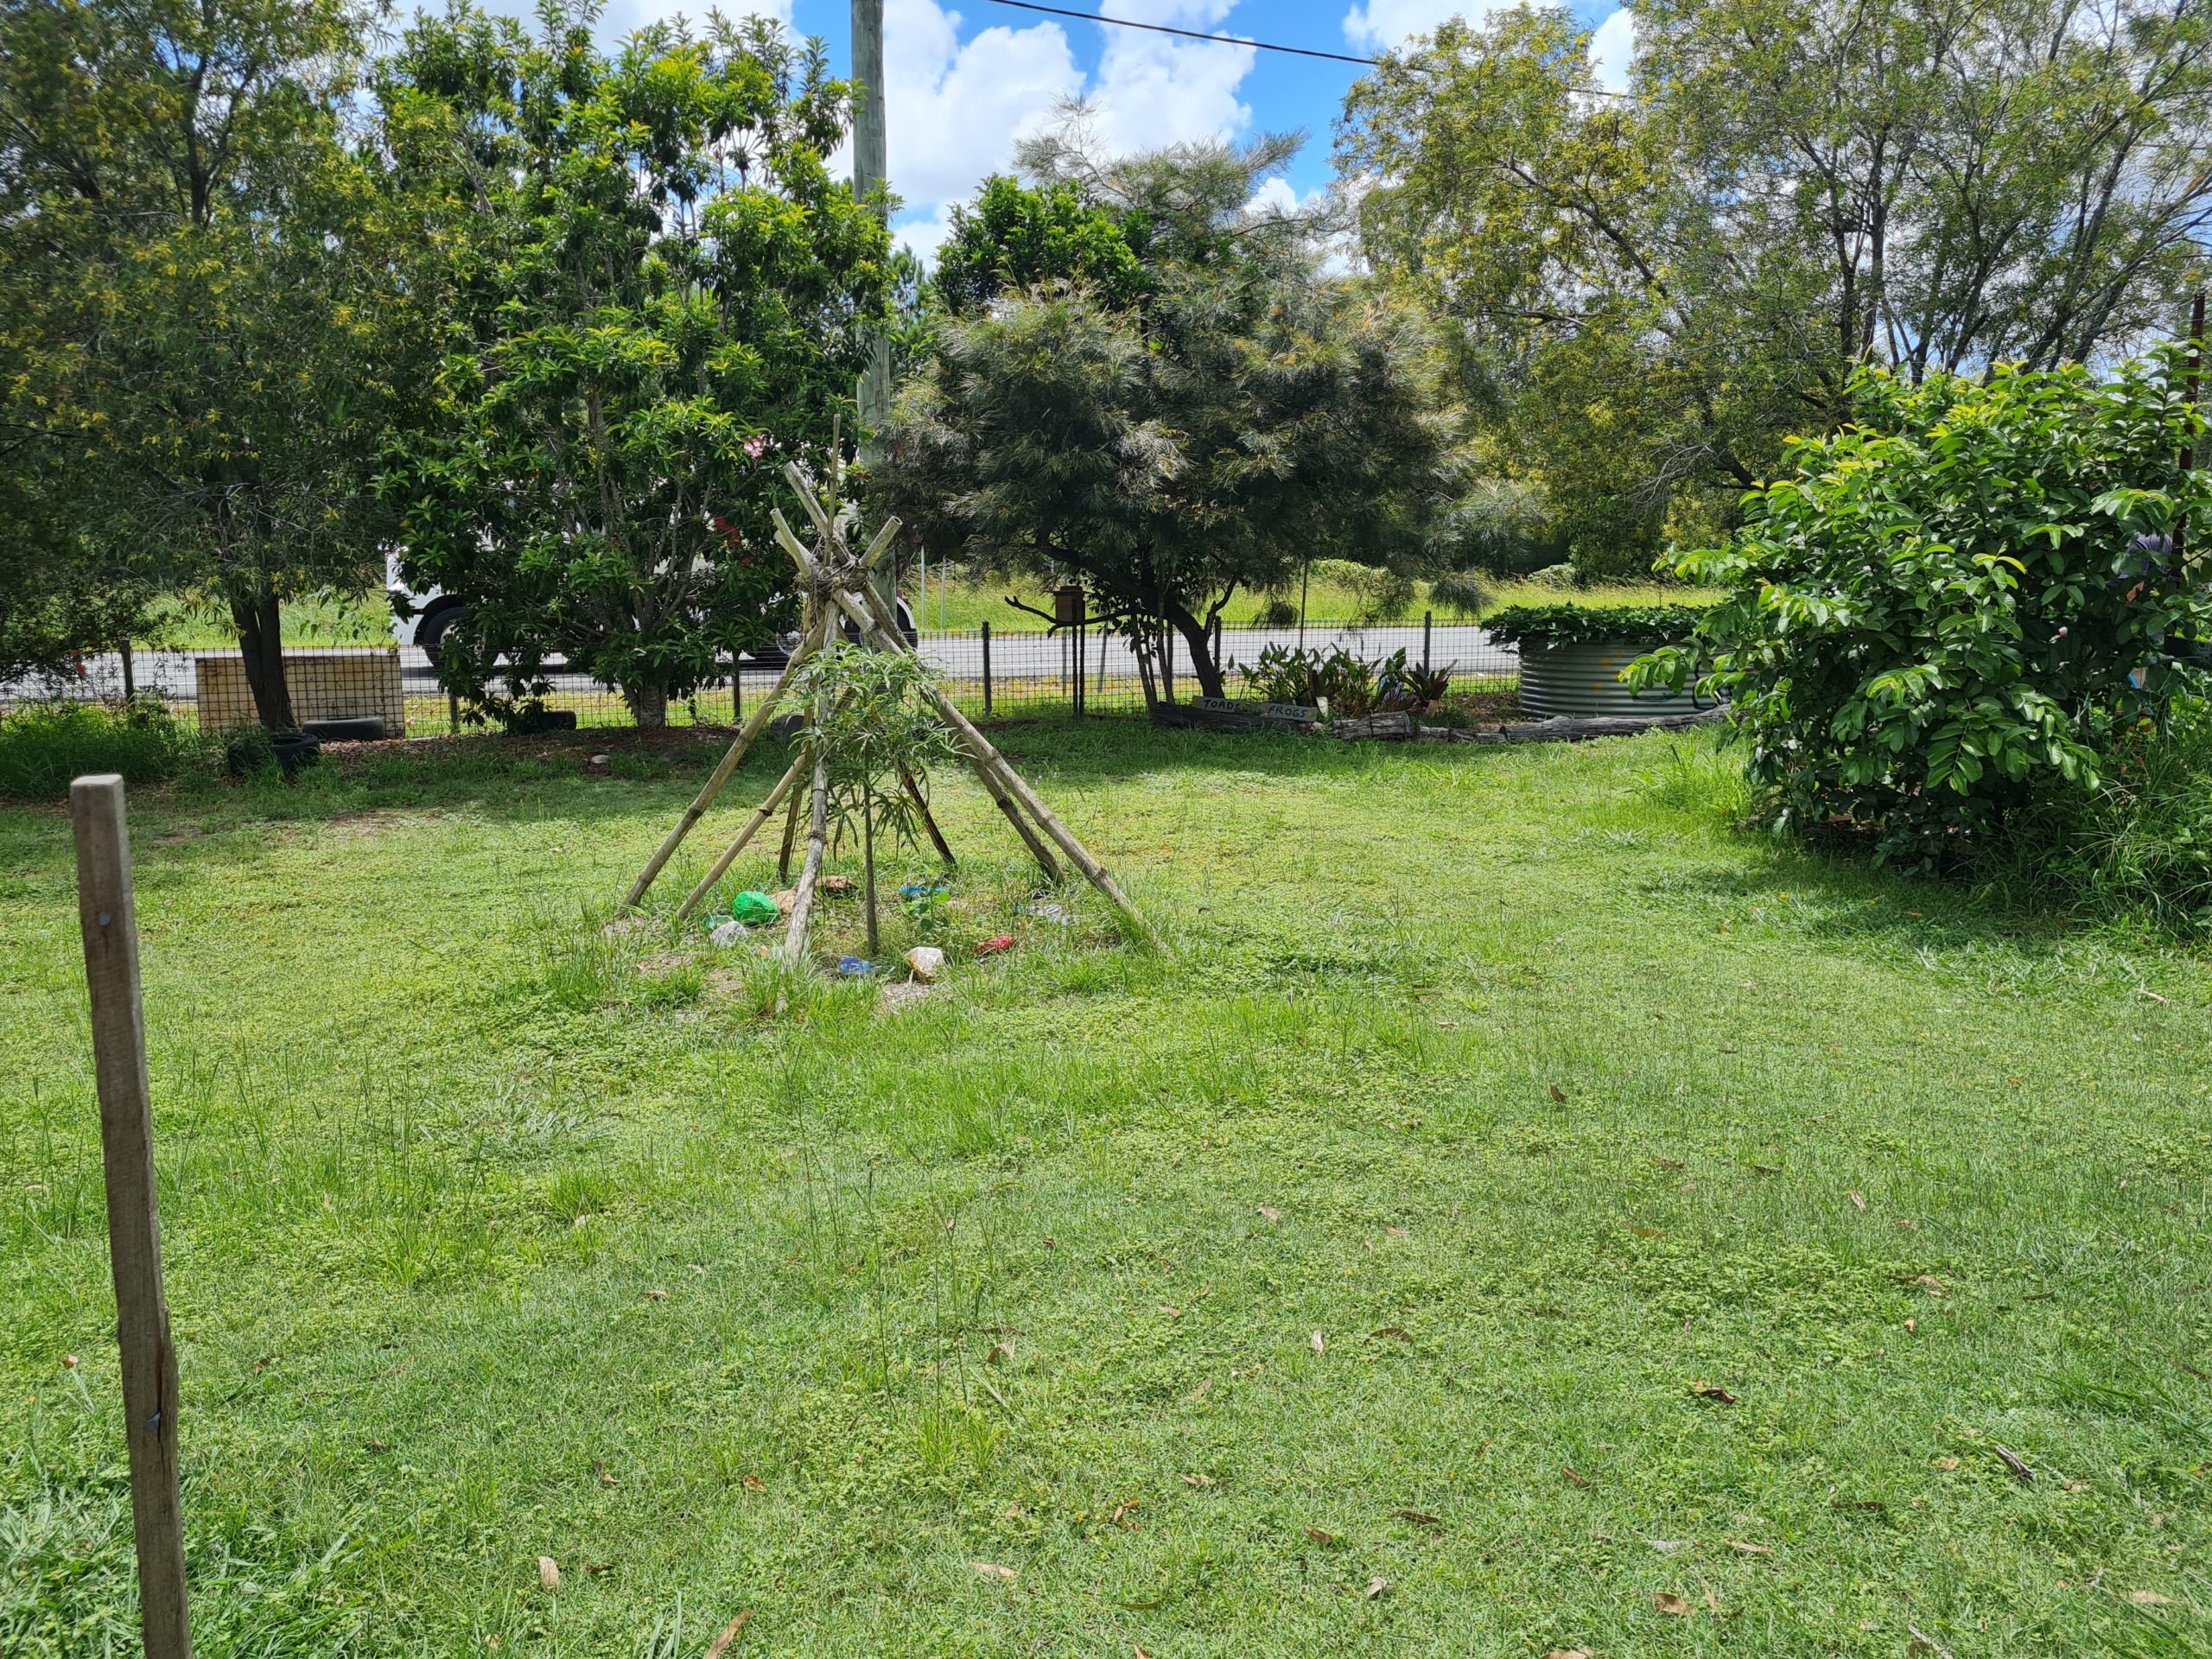 Ormeau Community Gardens